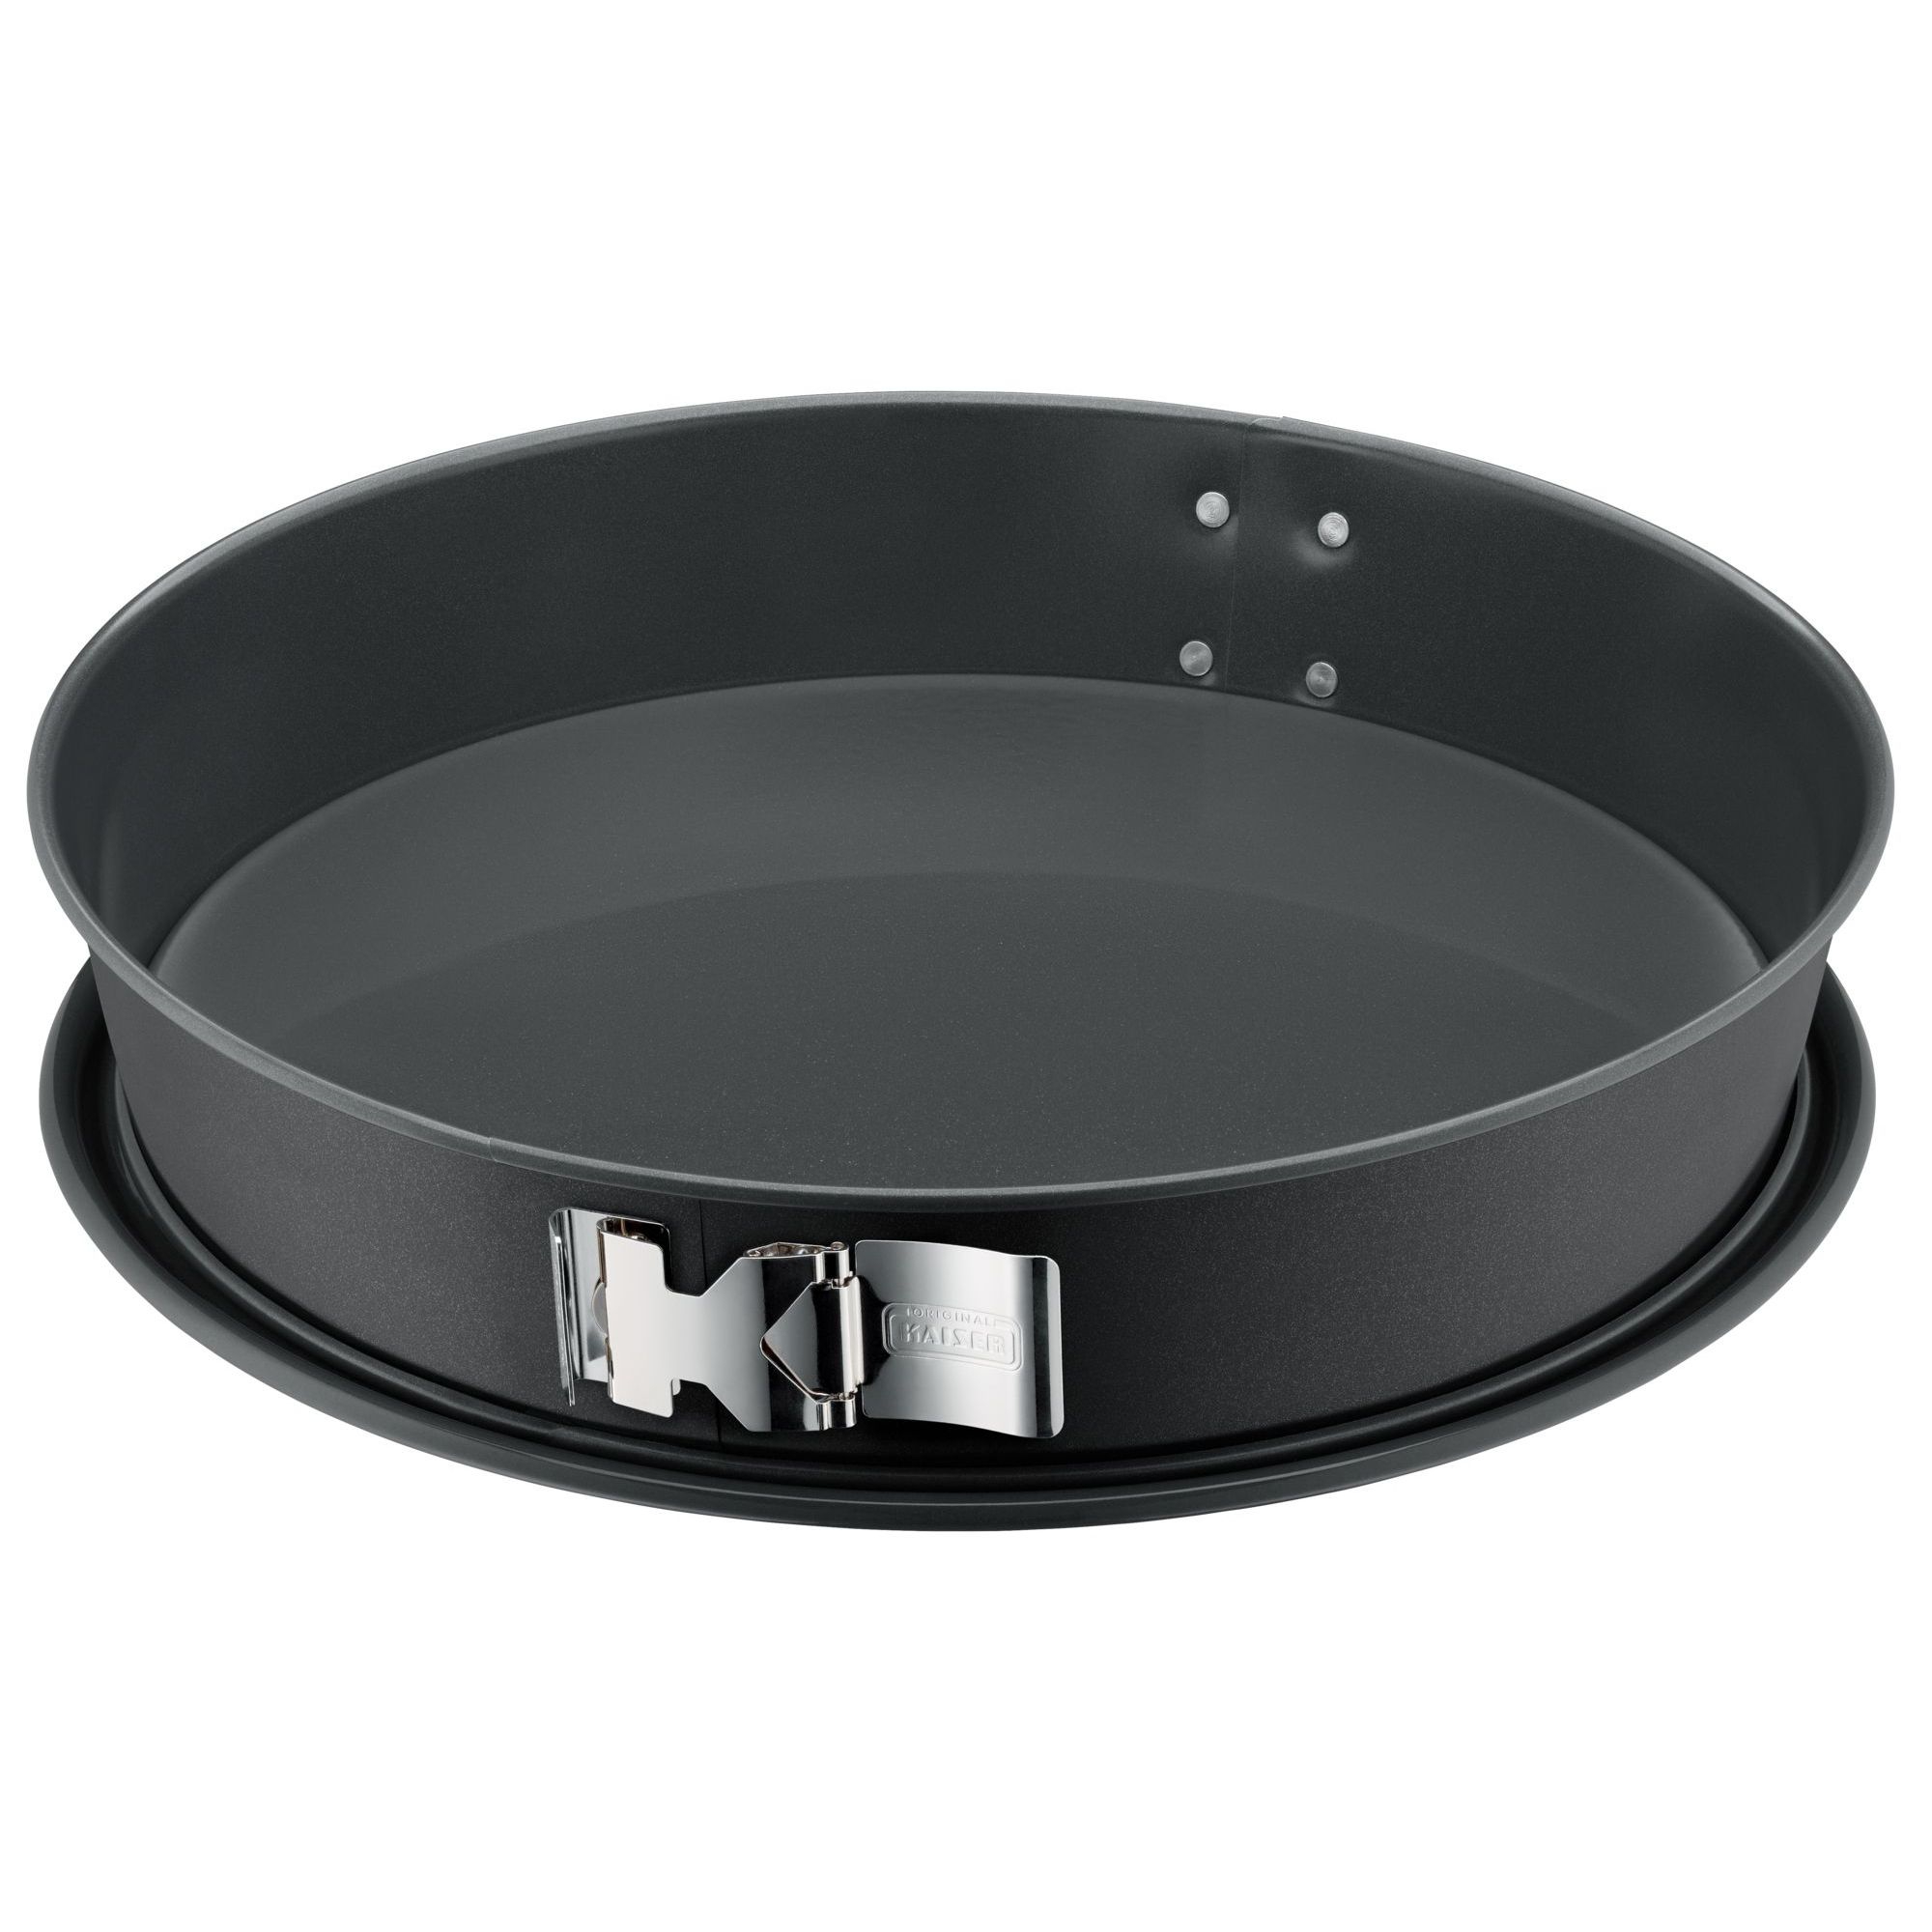 La Forme Plus springform pan with SafeClick, conical, 32 cm